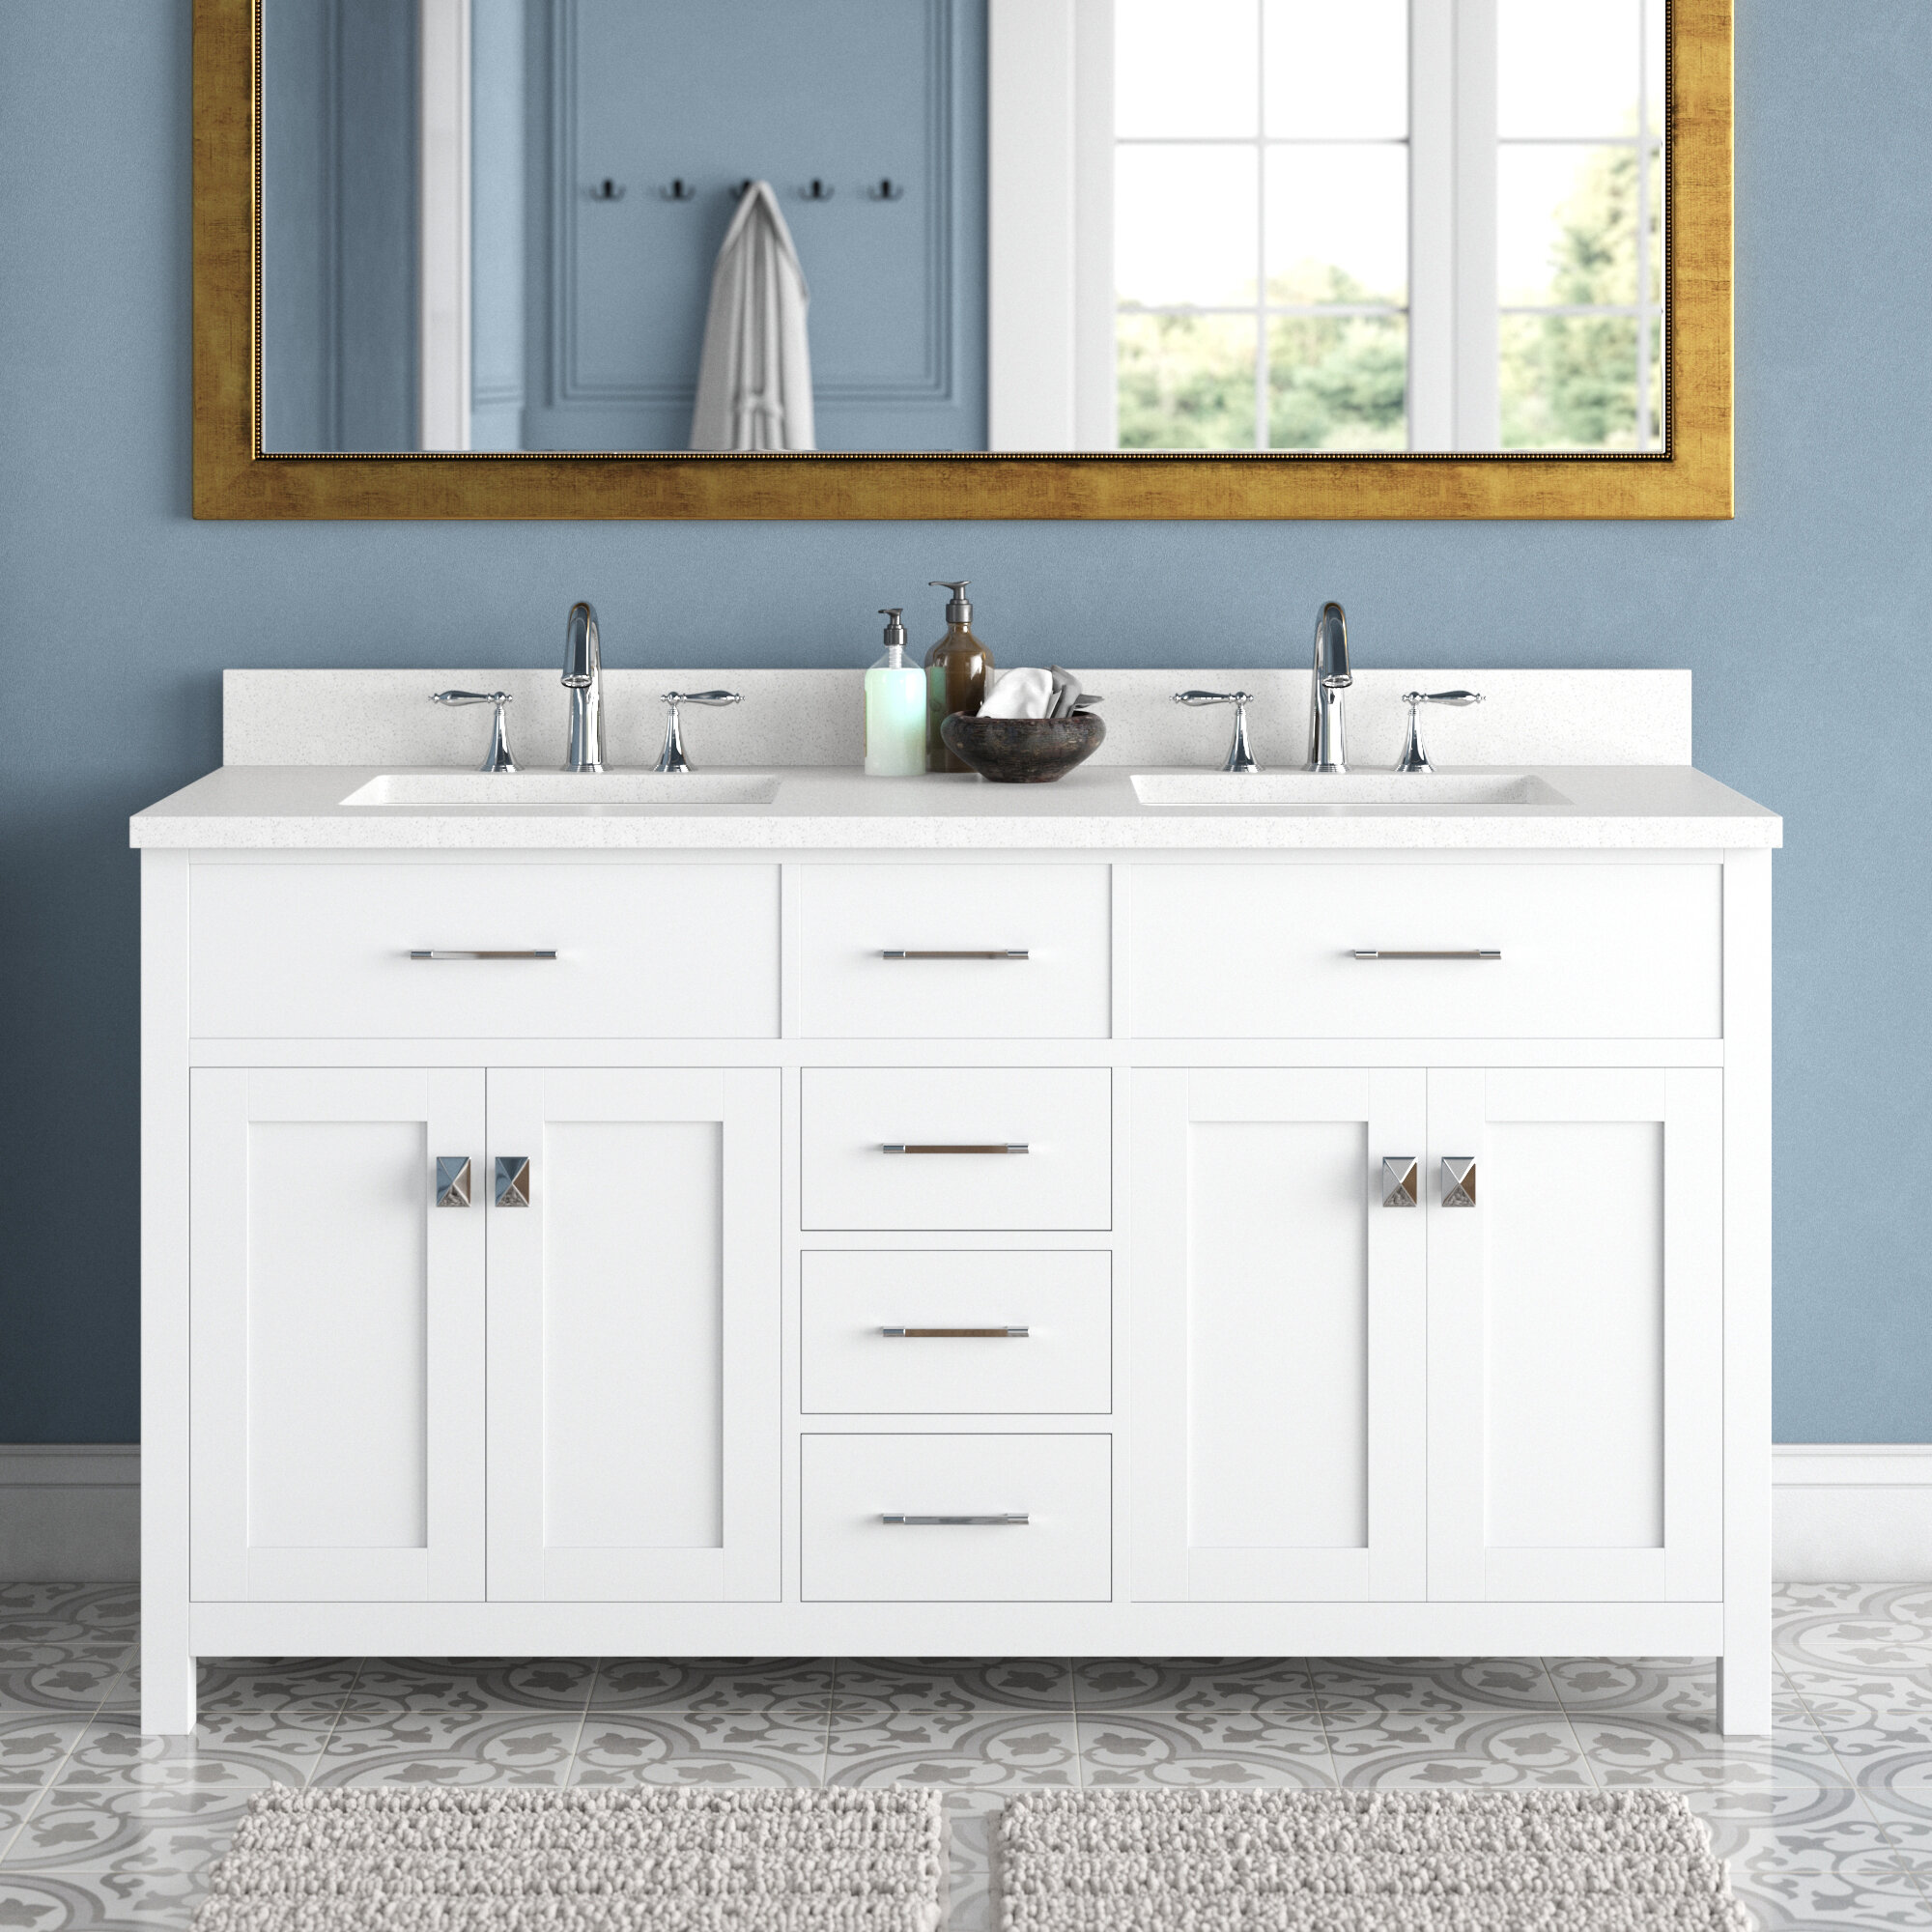 Bathroom Sink Cabinet,narrow depth vanities,vanity Bathroom  Cabinet,Bathroom Vanity Cabinet,freestanding Bathroom Vanities,Bathroom  Vanity Sink,vanity